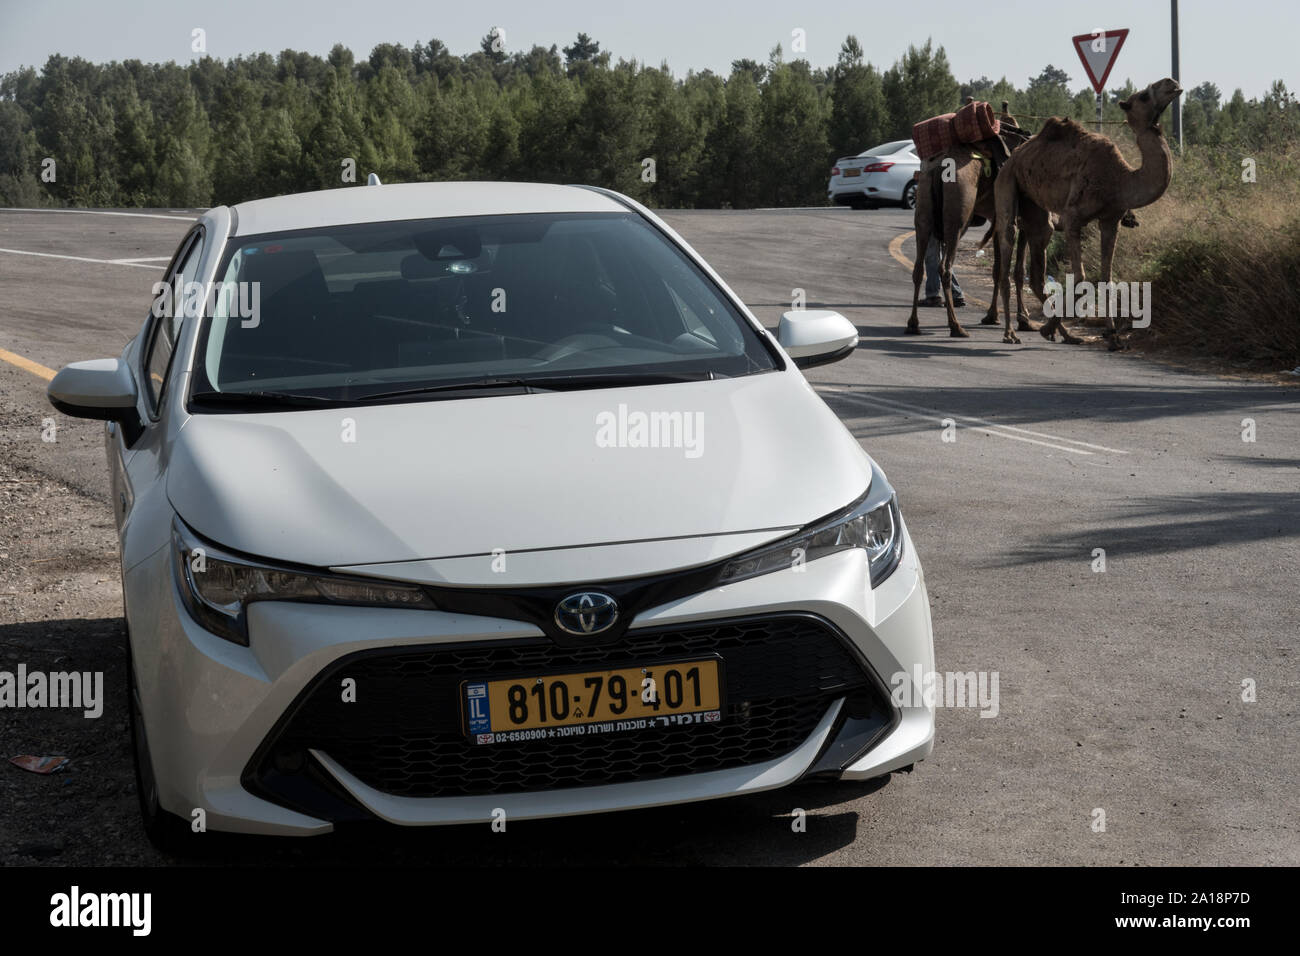 Ein 2019 Toyota Corolla Hatchback Excite steht im Vordergrund mit einem paar Kamele im Hintergrund, Methoden der Transport separat Stockfoto